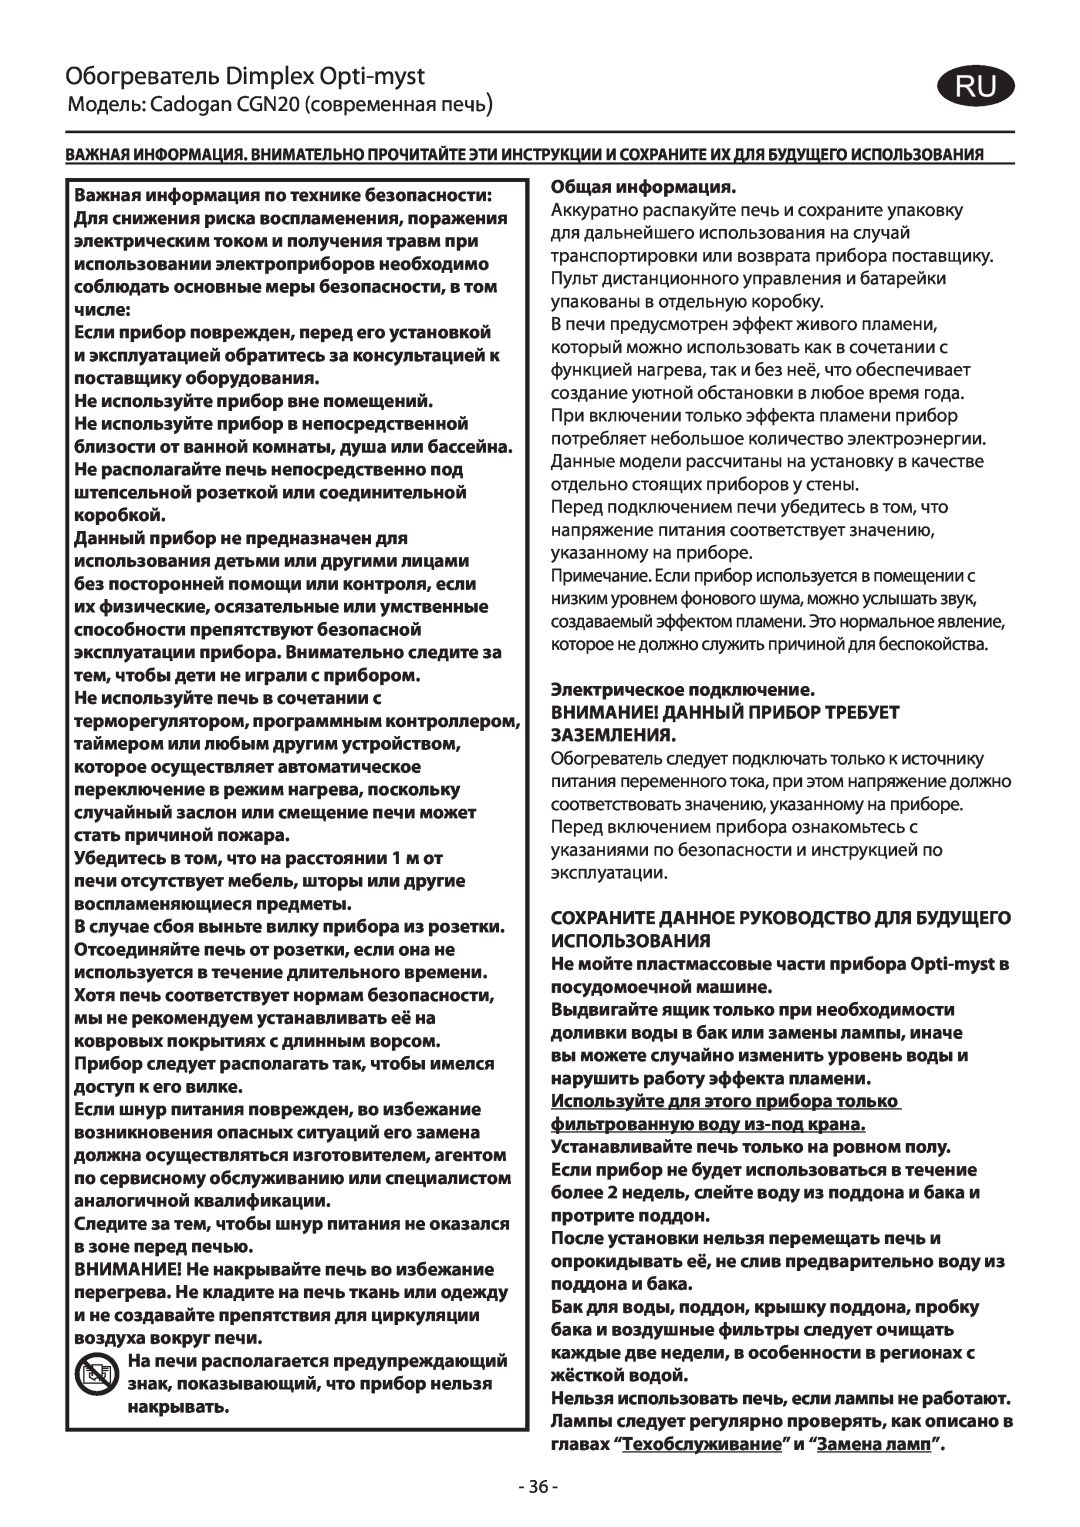 Dimplex CGn20 manual Обогреватель Dimplex Opti-myst, Модель Cadogan CGN20 современная печь 